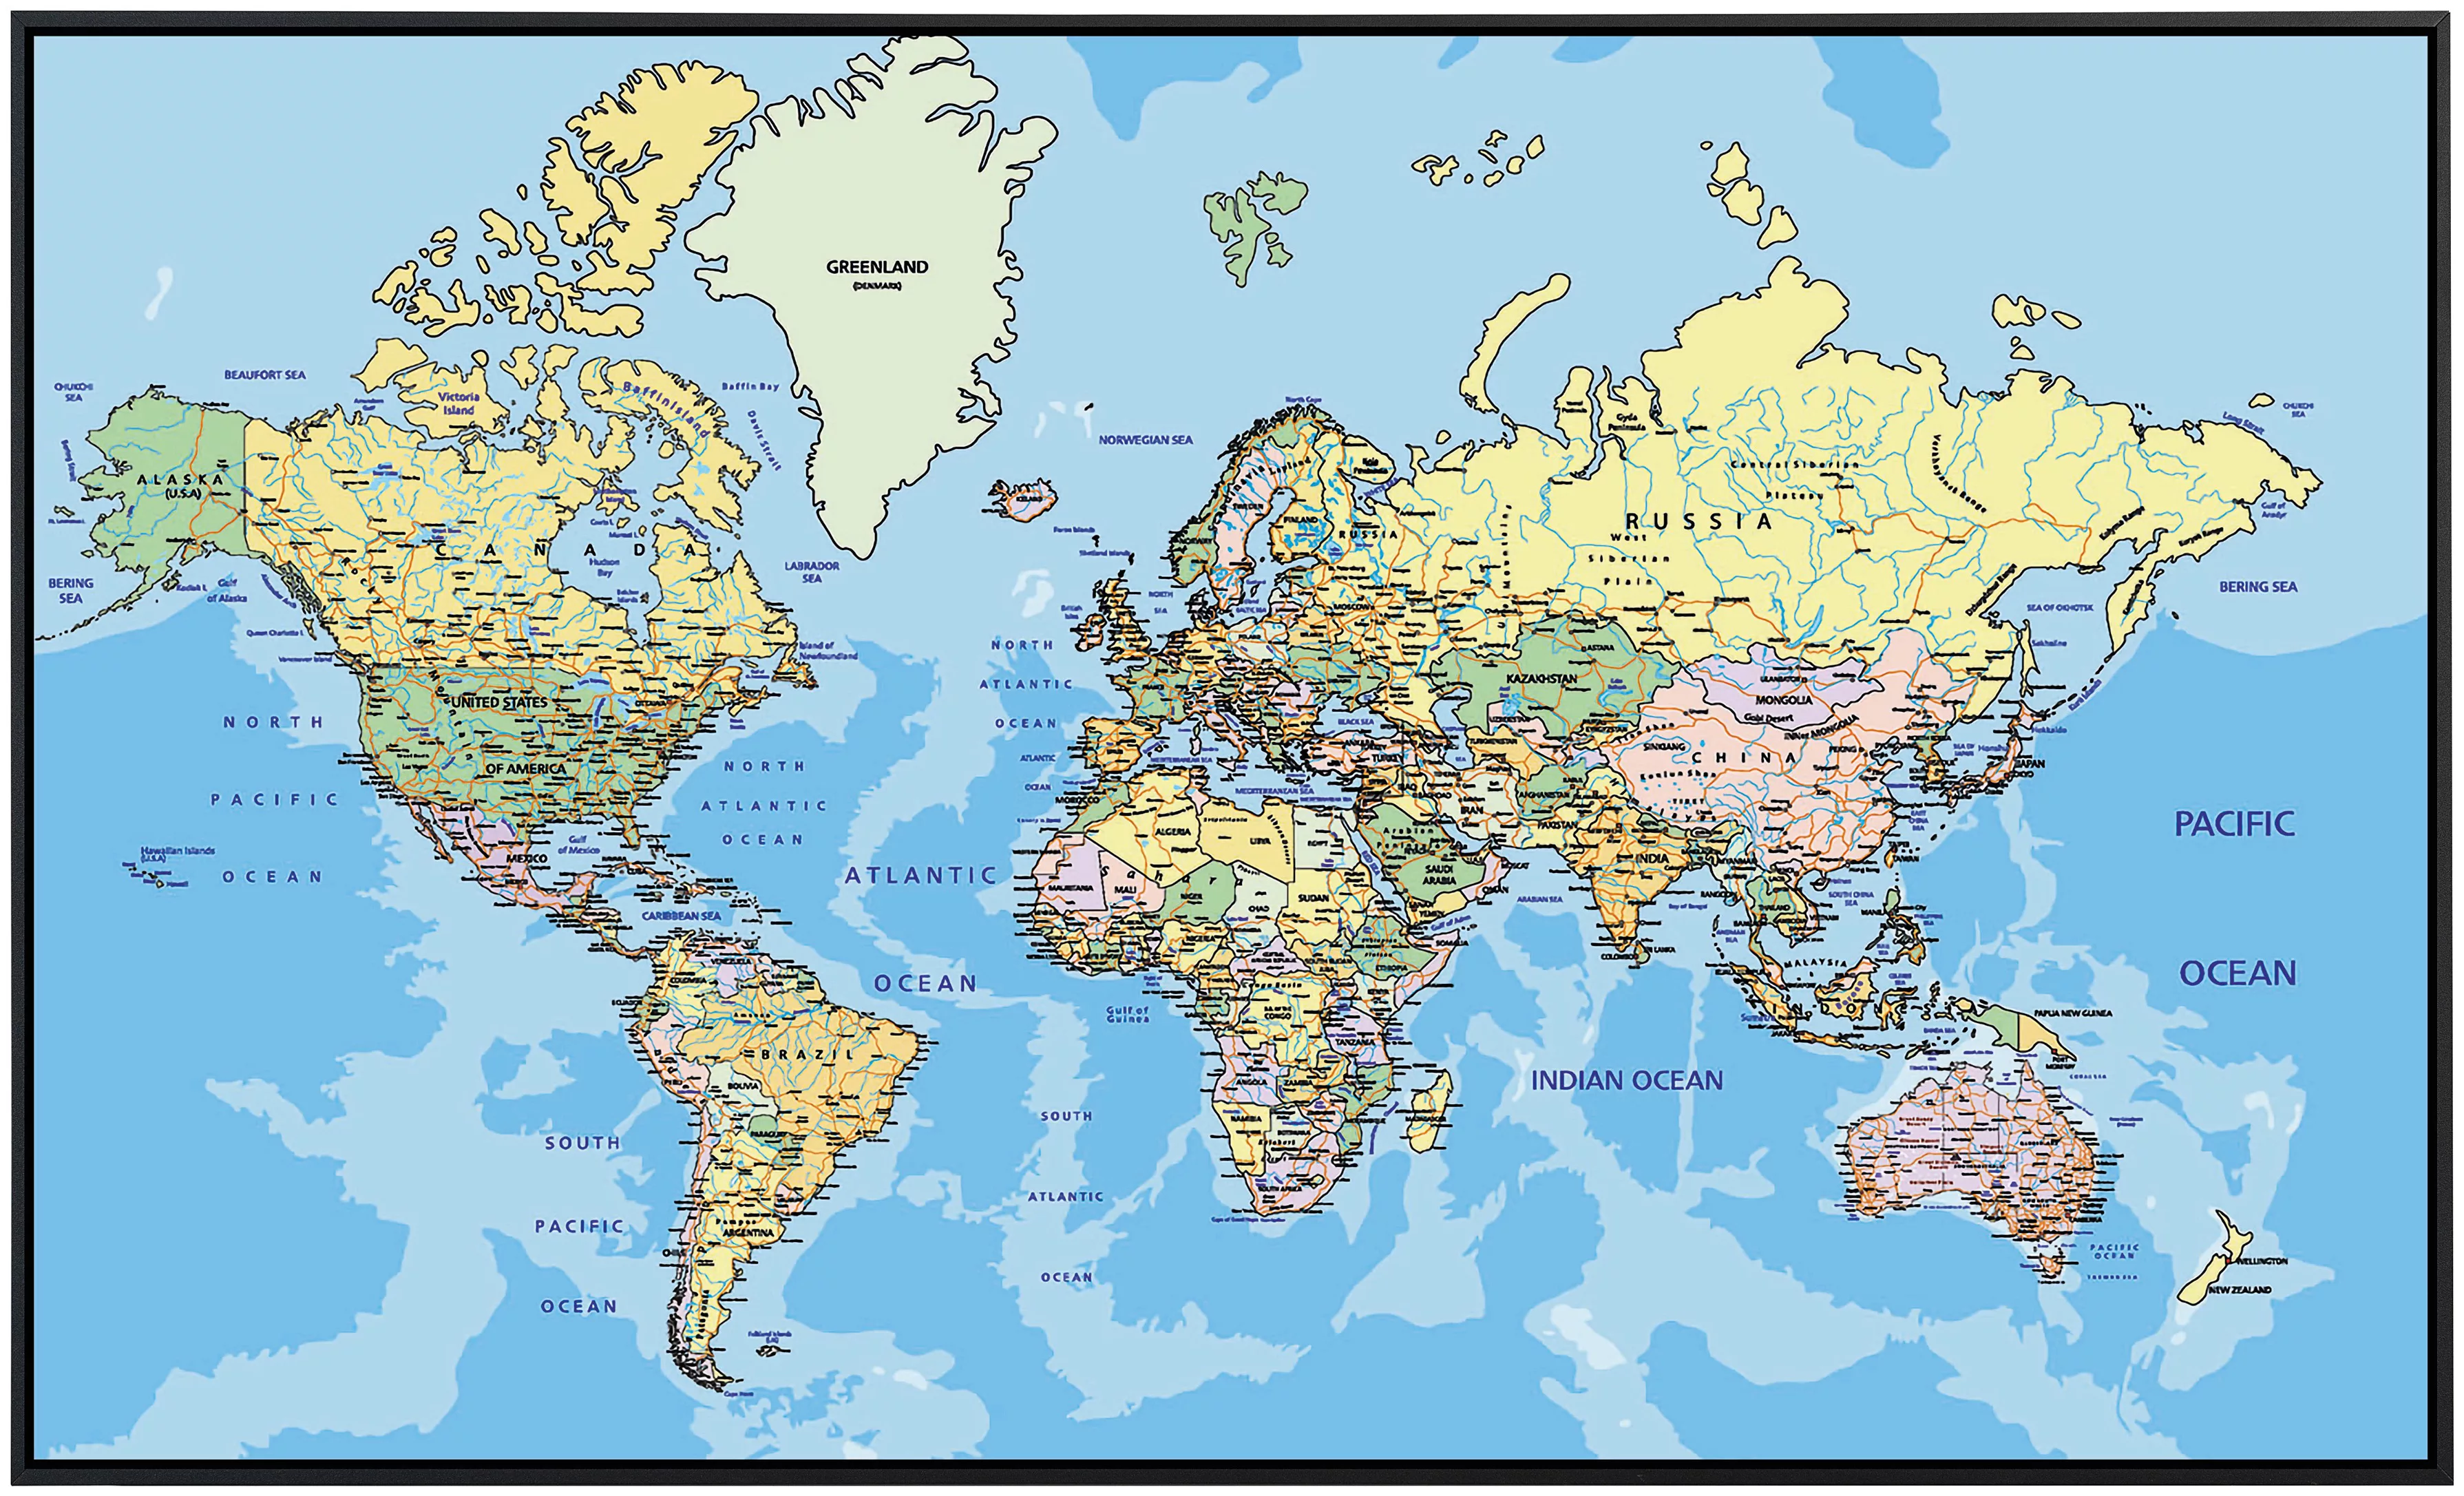 Papermoon Infrarotheizung »Weltkarte«, sehr angenehme Strahlungswärme günstig online kaufen